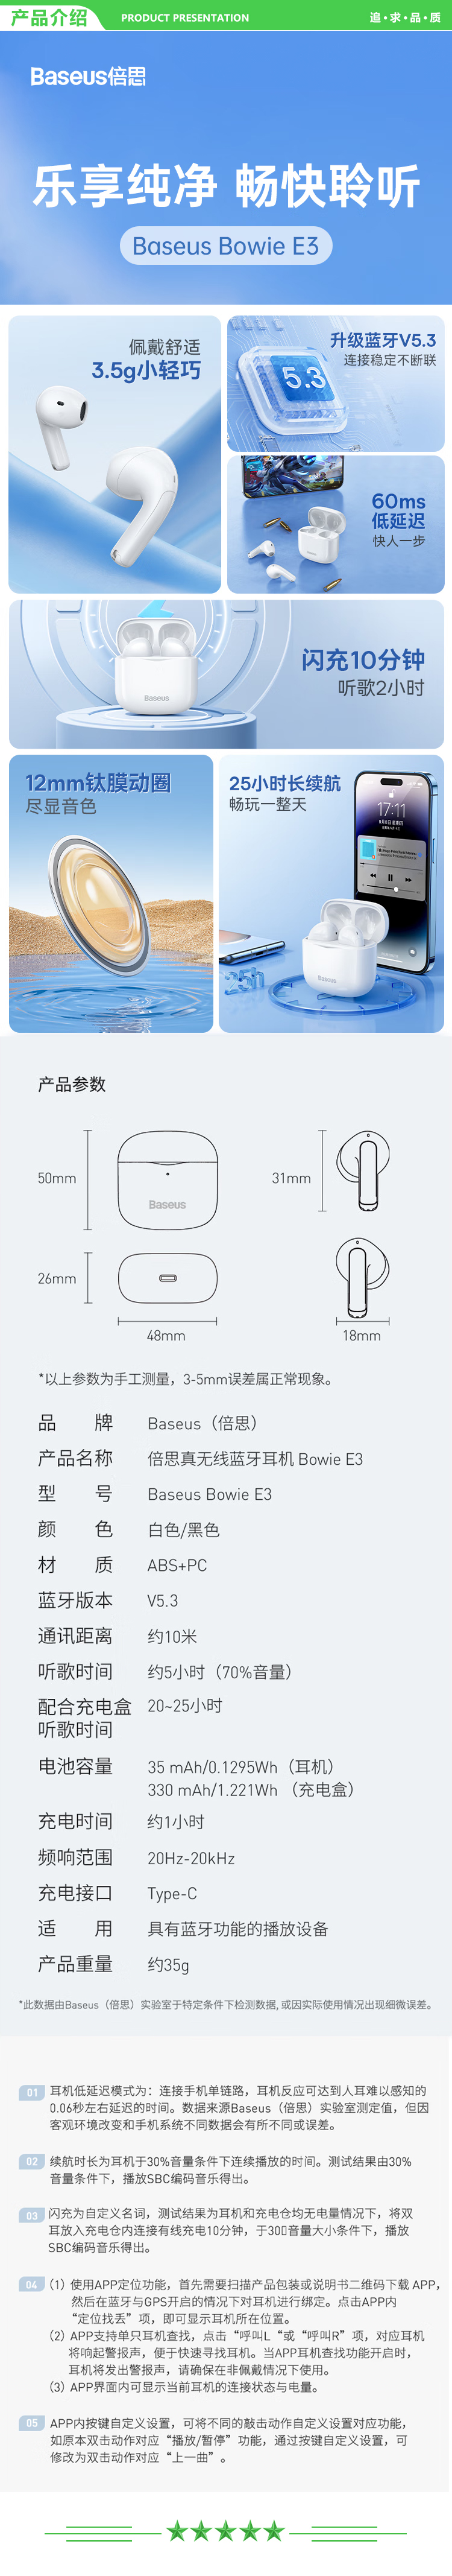 倍思 Baseus E3 白色 蓝牙耳机真无线半入耳式游戏吃鸡低延迟音乐降噪适用于苹果华为vivo小米荣耀oppo.jpg